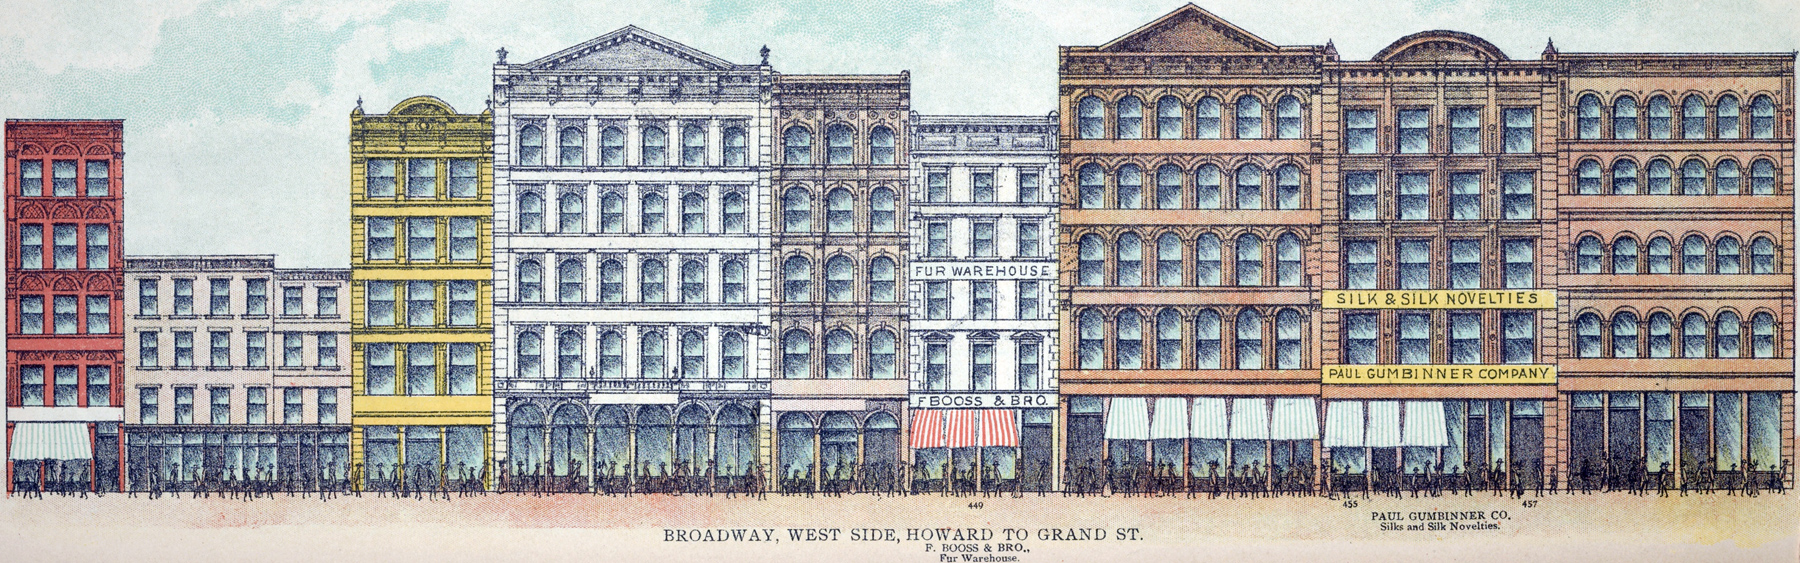 Broadway West Side